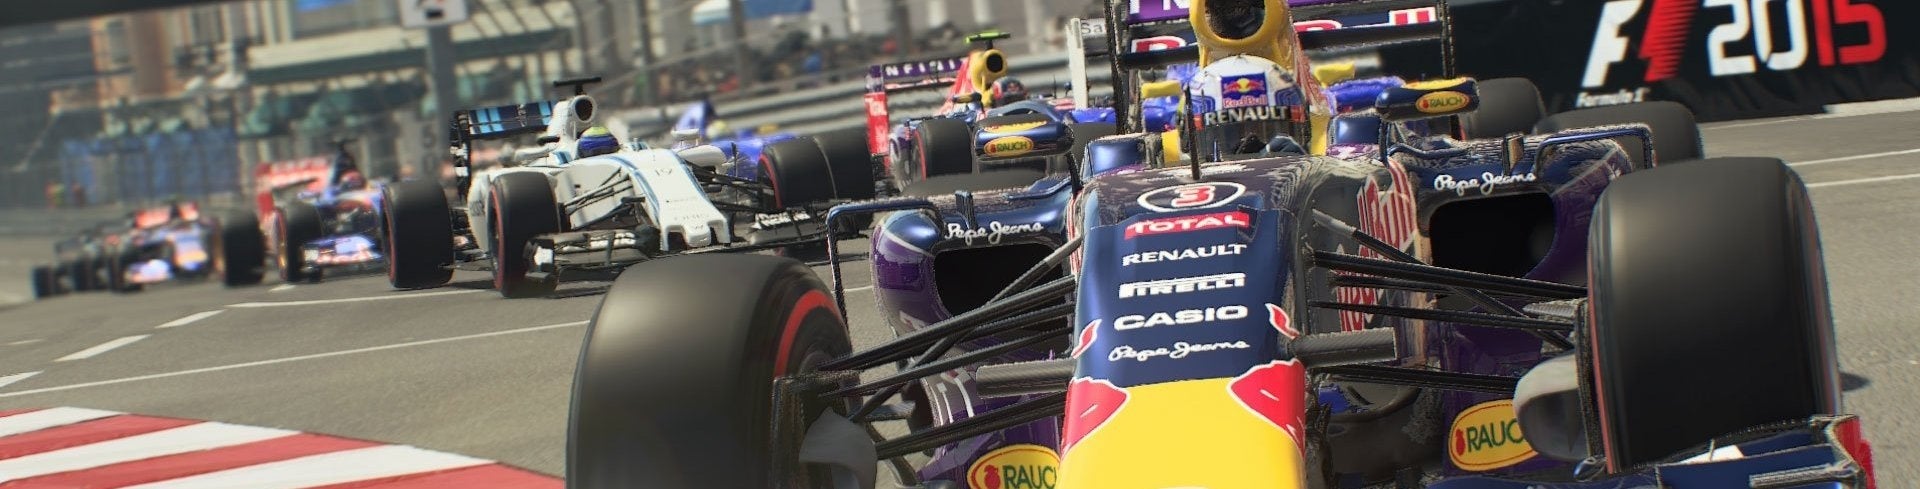 Immagine di F1 2015: console nuove, problemi vecchi - recensione